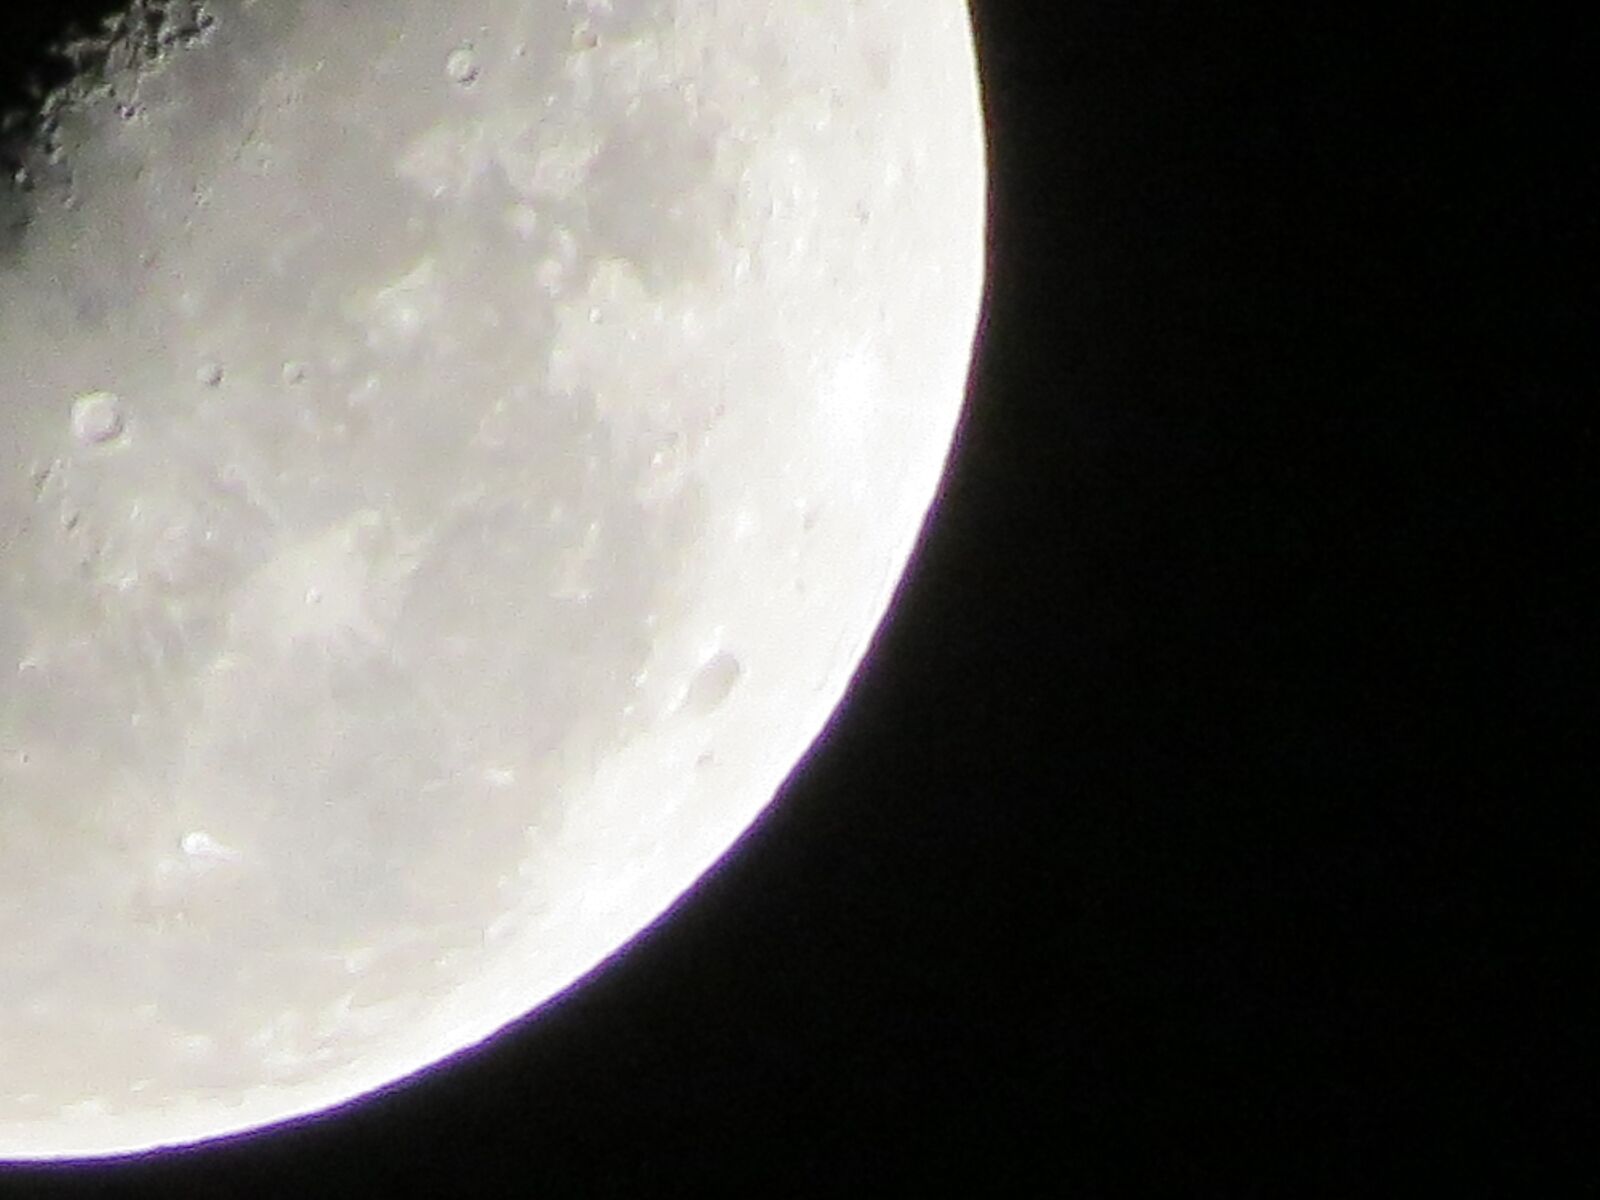 Canon PowerShot SX50 HS sample photo. Luna, astro, astronomía photography